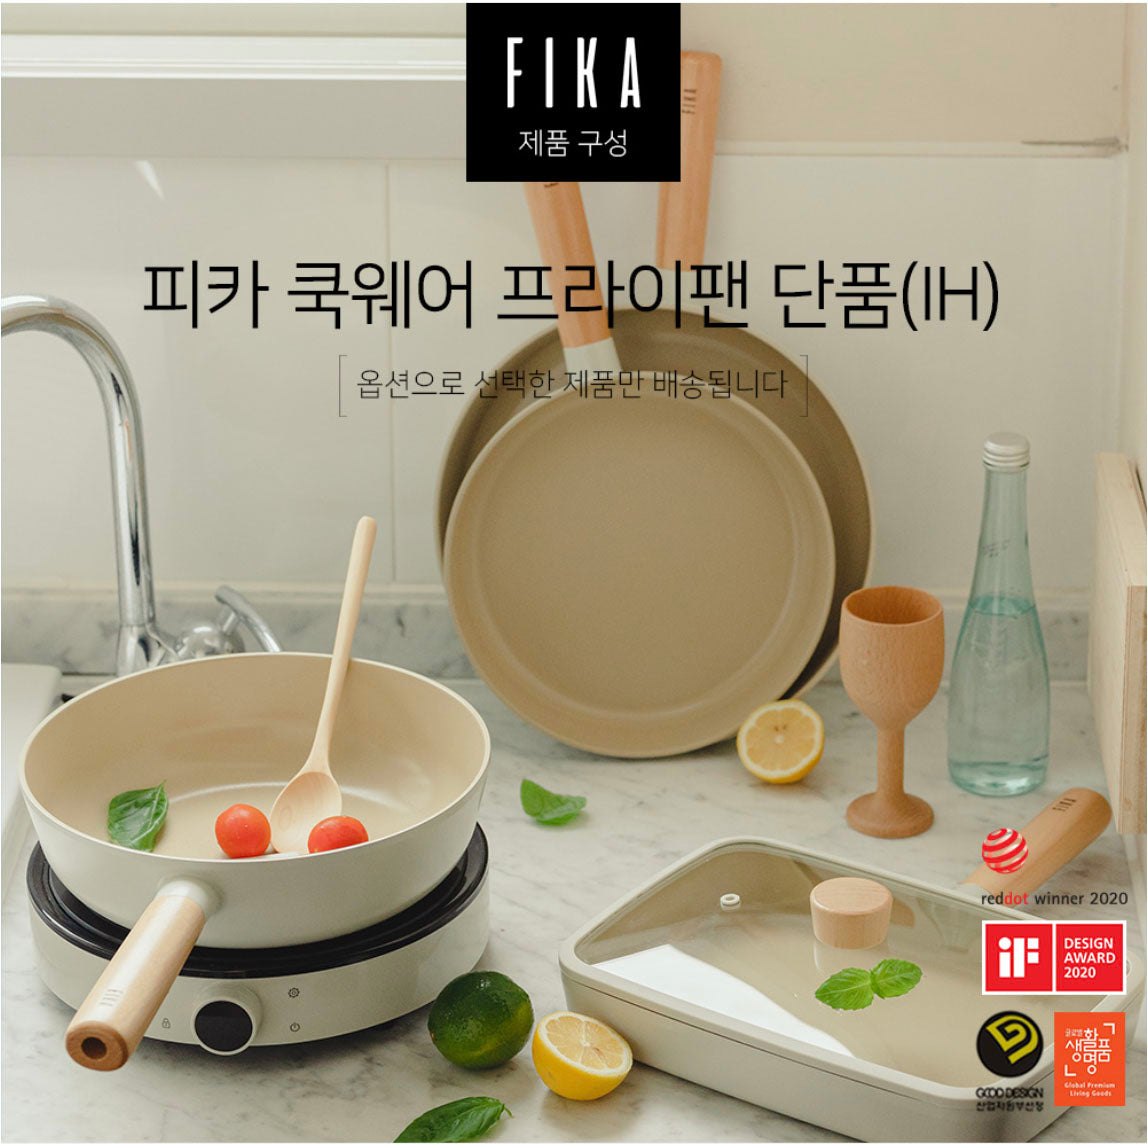 FIKA Pan Set – Cook with FIKA